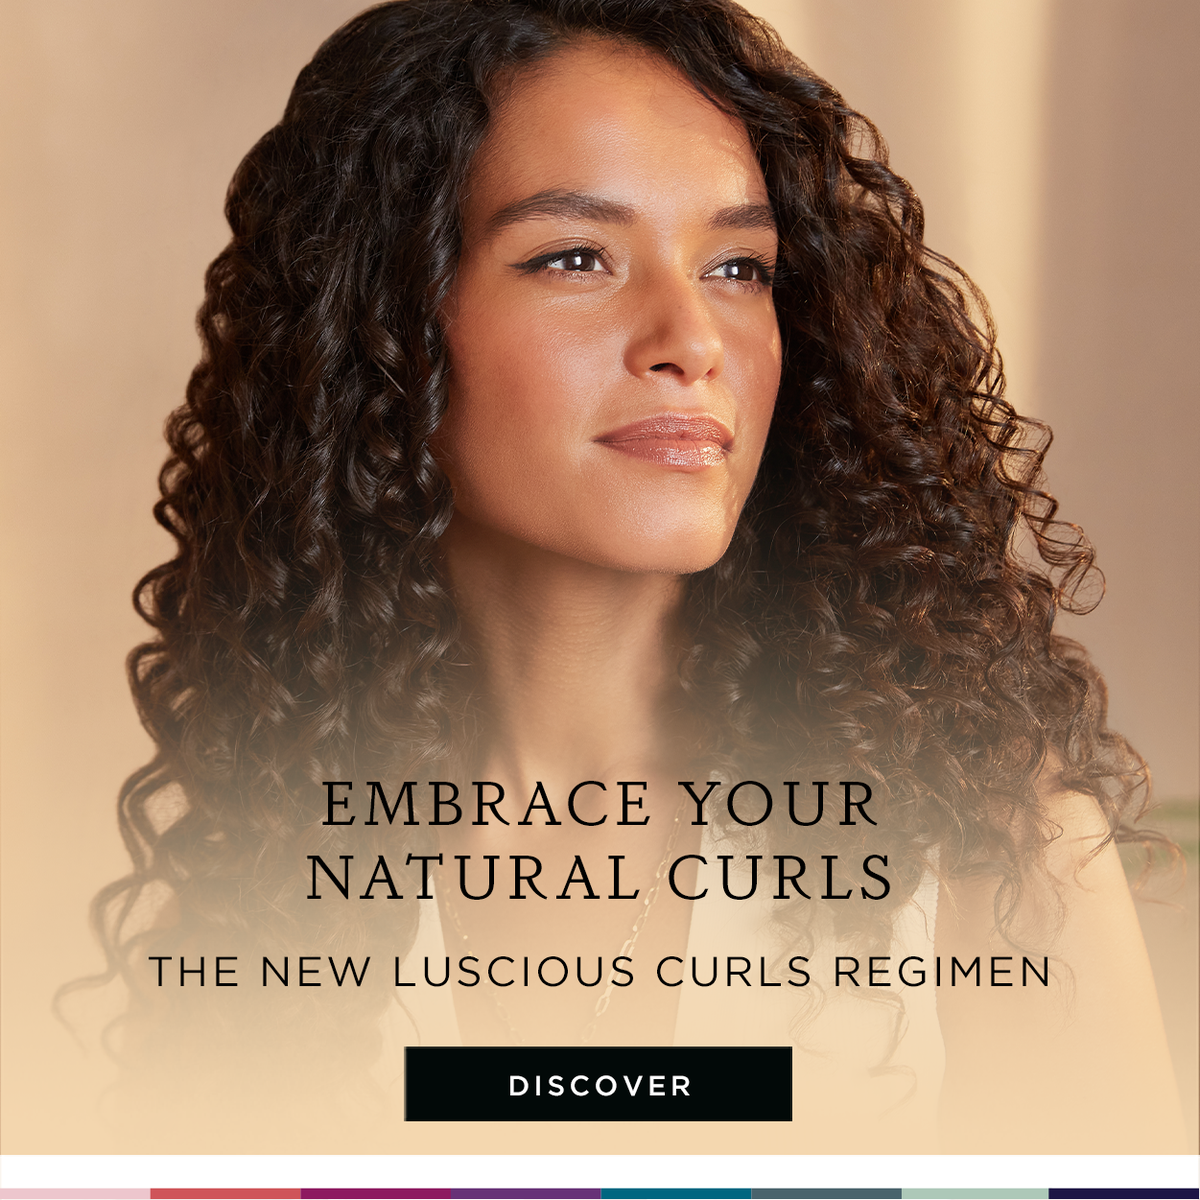 The New Luscious Curls Regimen